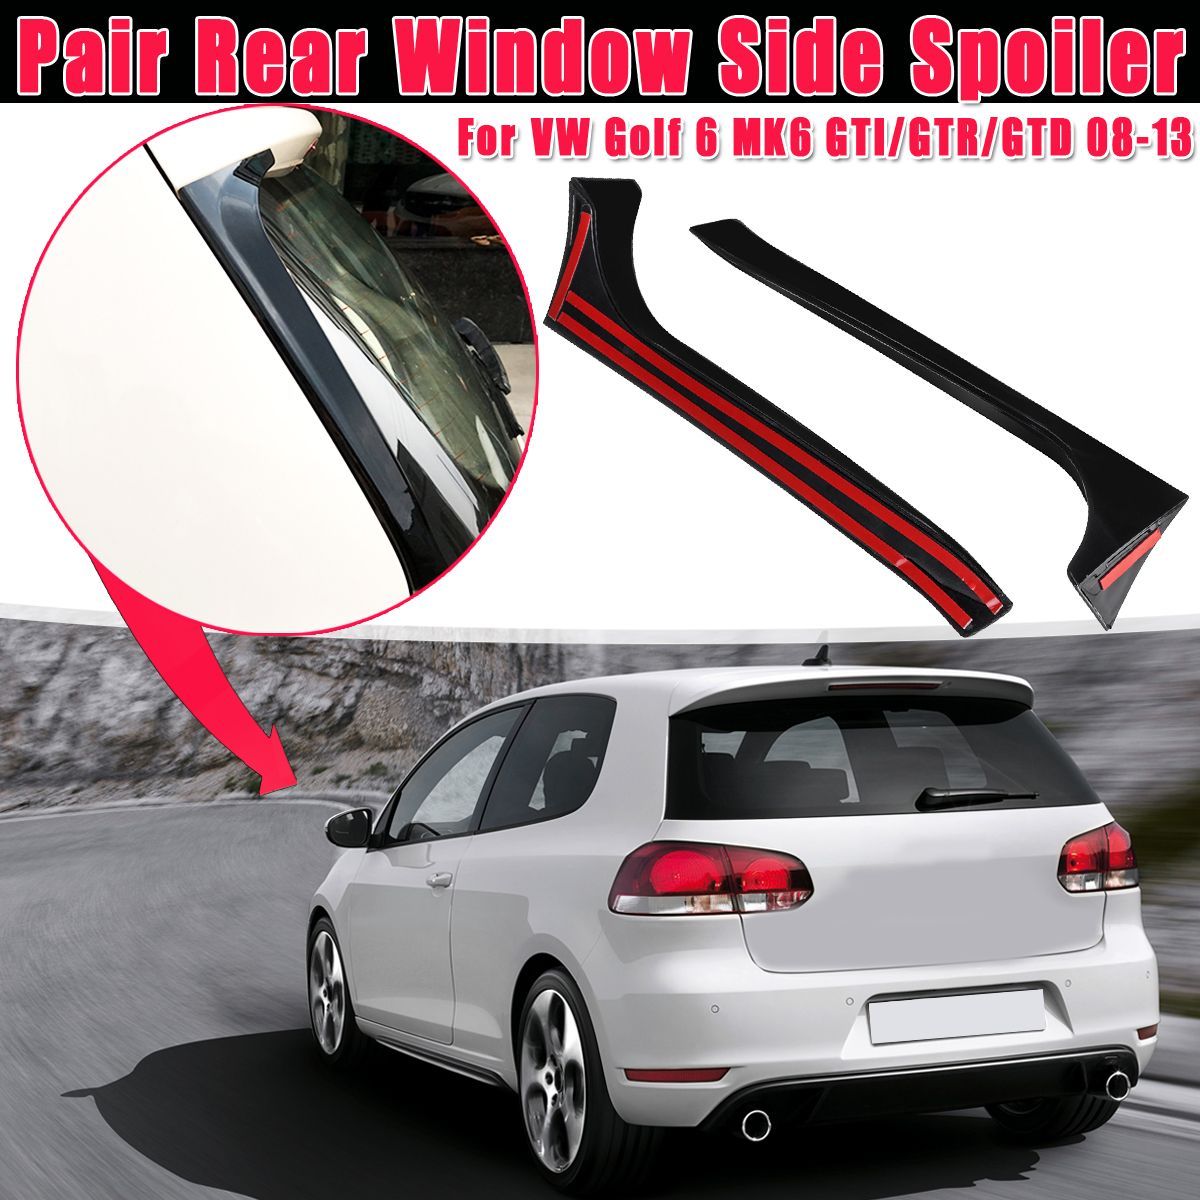 2Pcs-Car-Rear-Window-Side-Spoiler-Wing-Canard-Canards-Splitter-For-VW-Golf-6-MK6-GTIGTRGTD-08-13-1615552